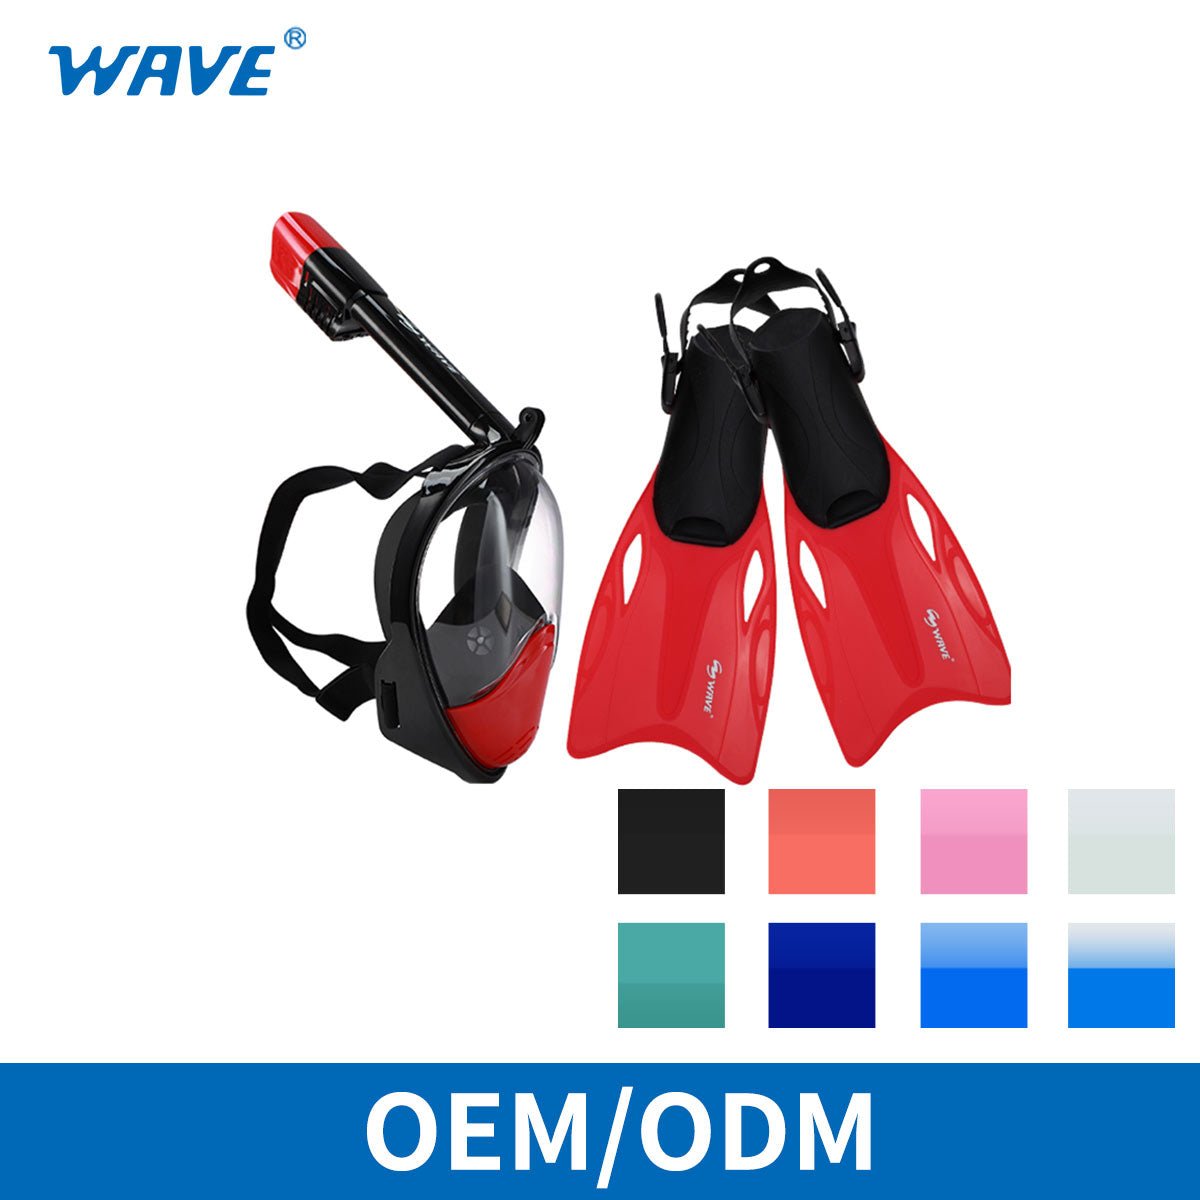 OEM ODM 潜水套装全脸呼吸管面罩 180 度适合水肺潜水